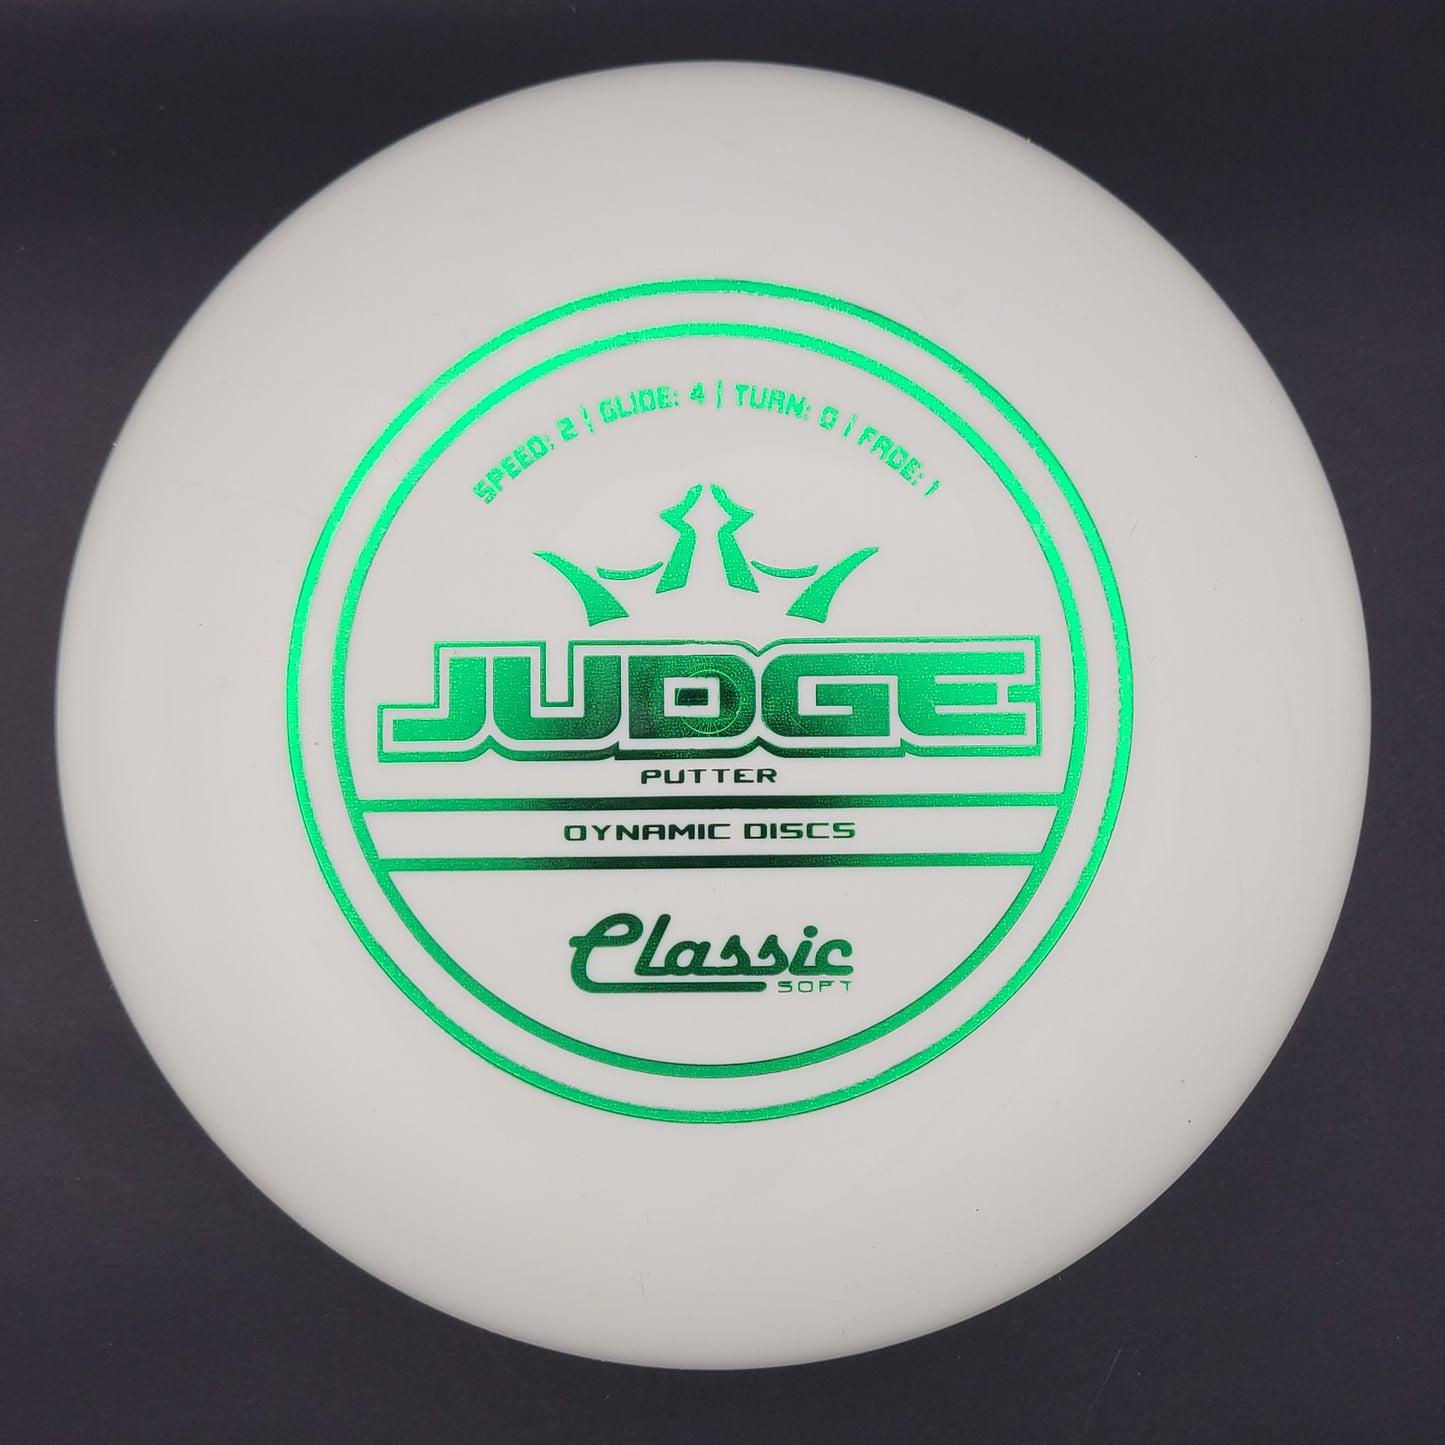 Dynamic Discs - Judge - Classic Soft